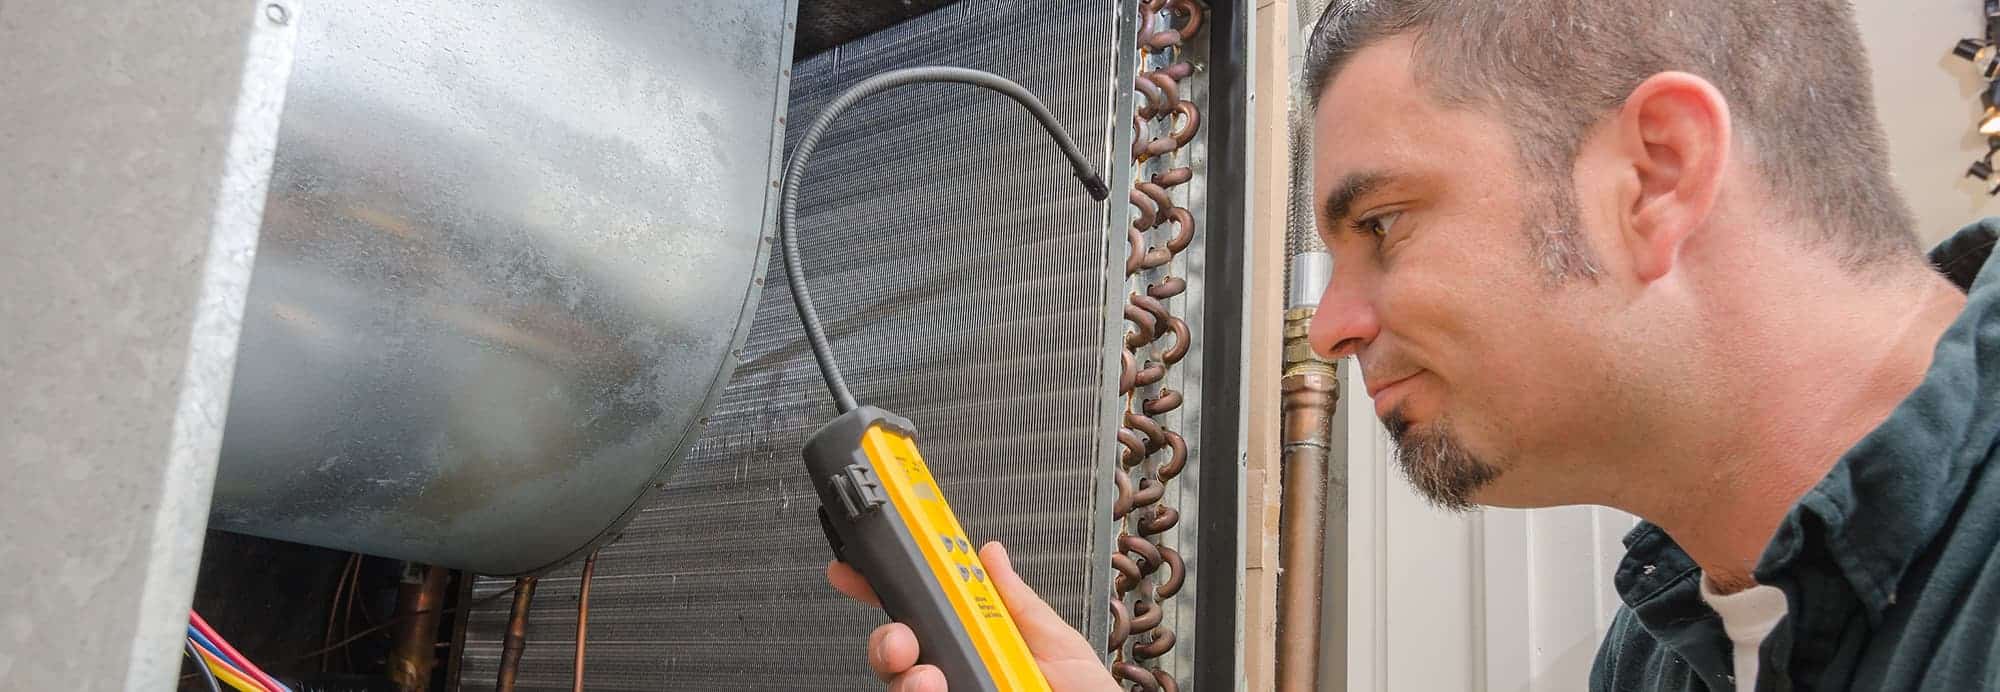 Evaporator Repair San Diego: The Common Evaporator Coil Issues